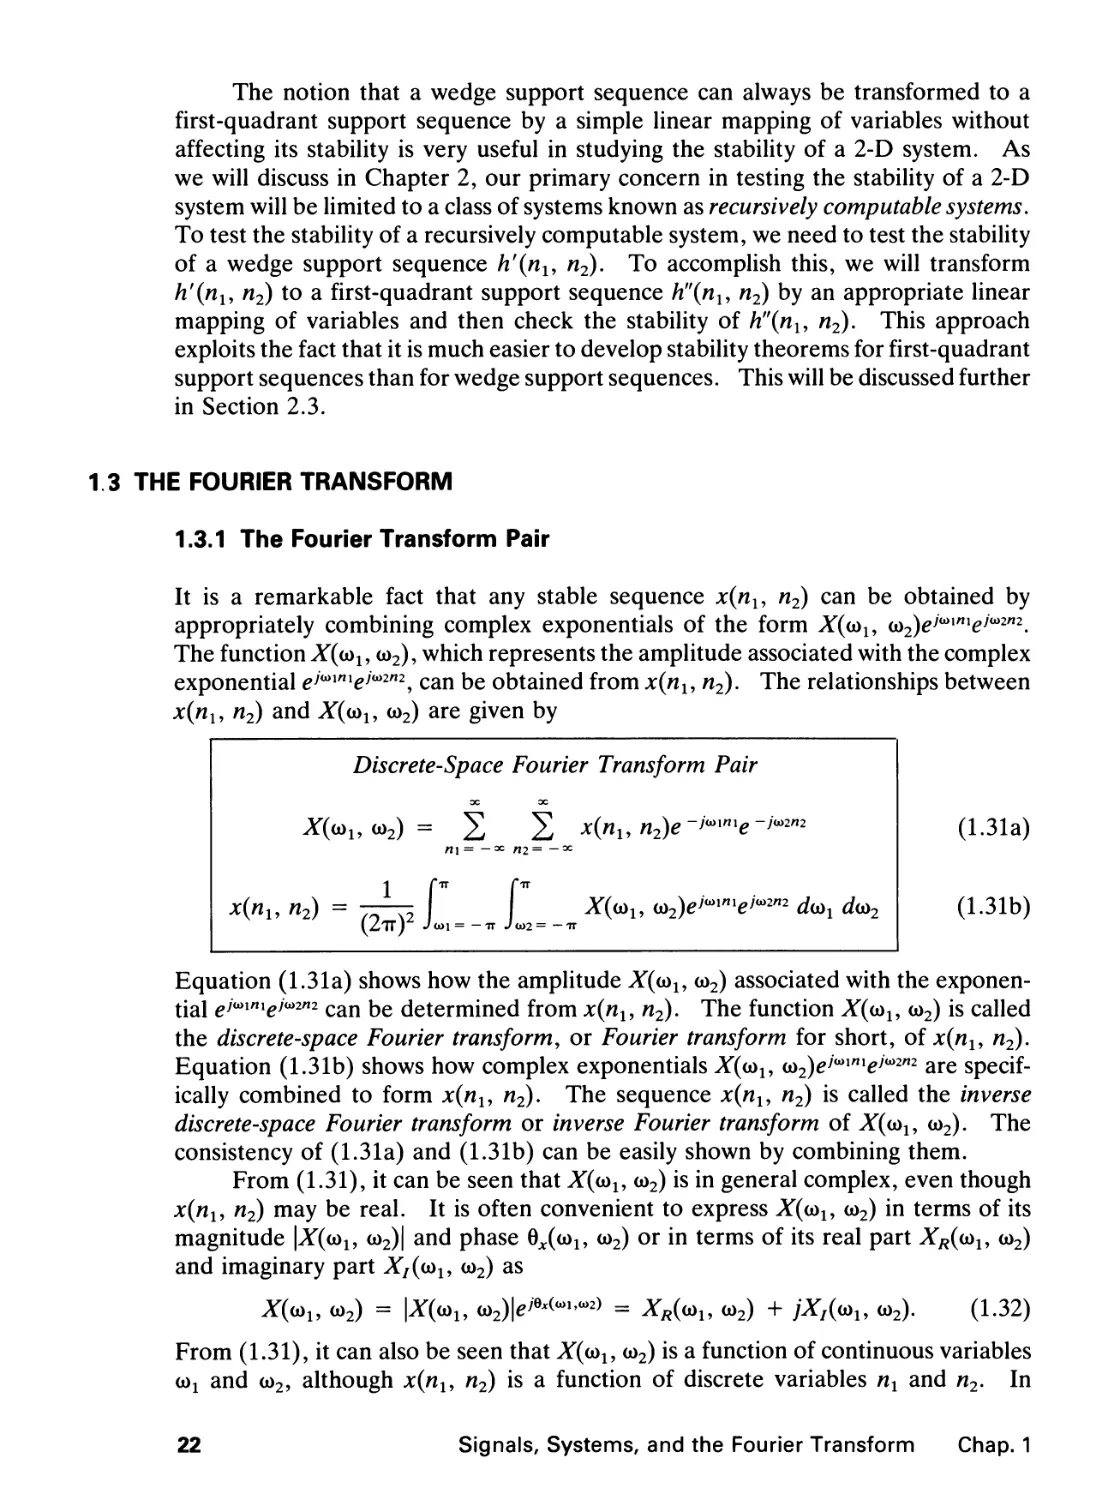 1.3 The Fourier Transform